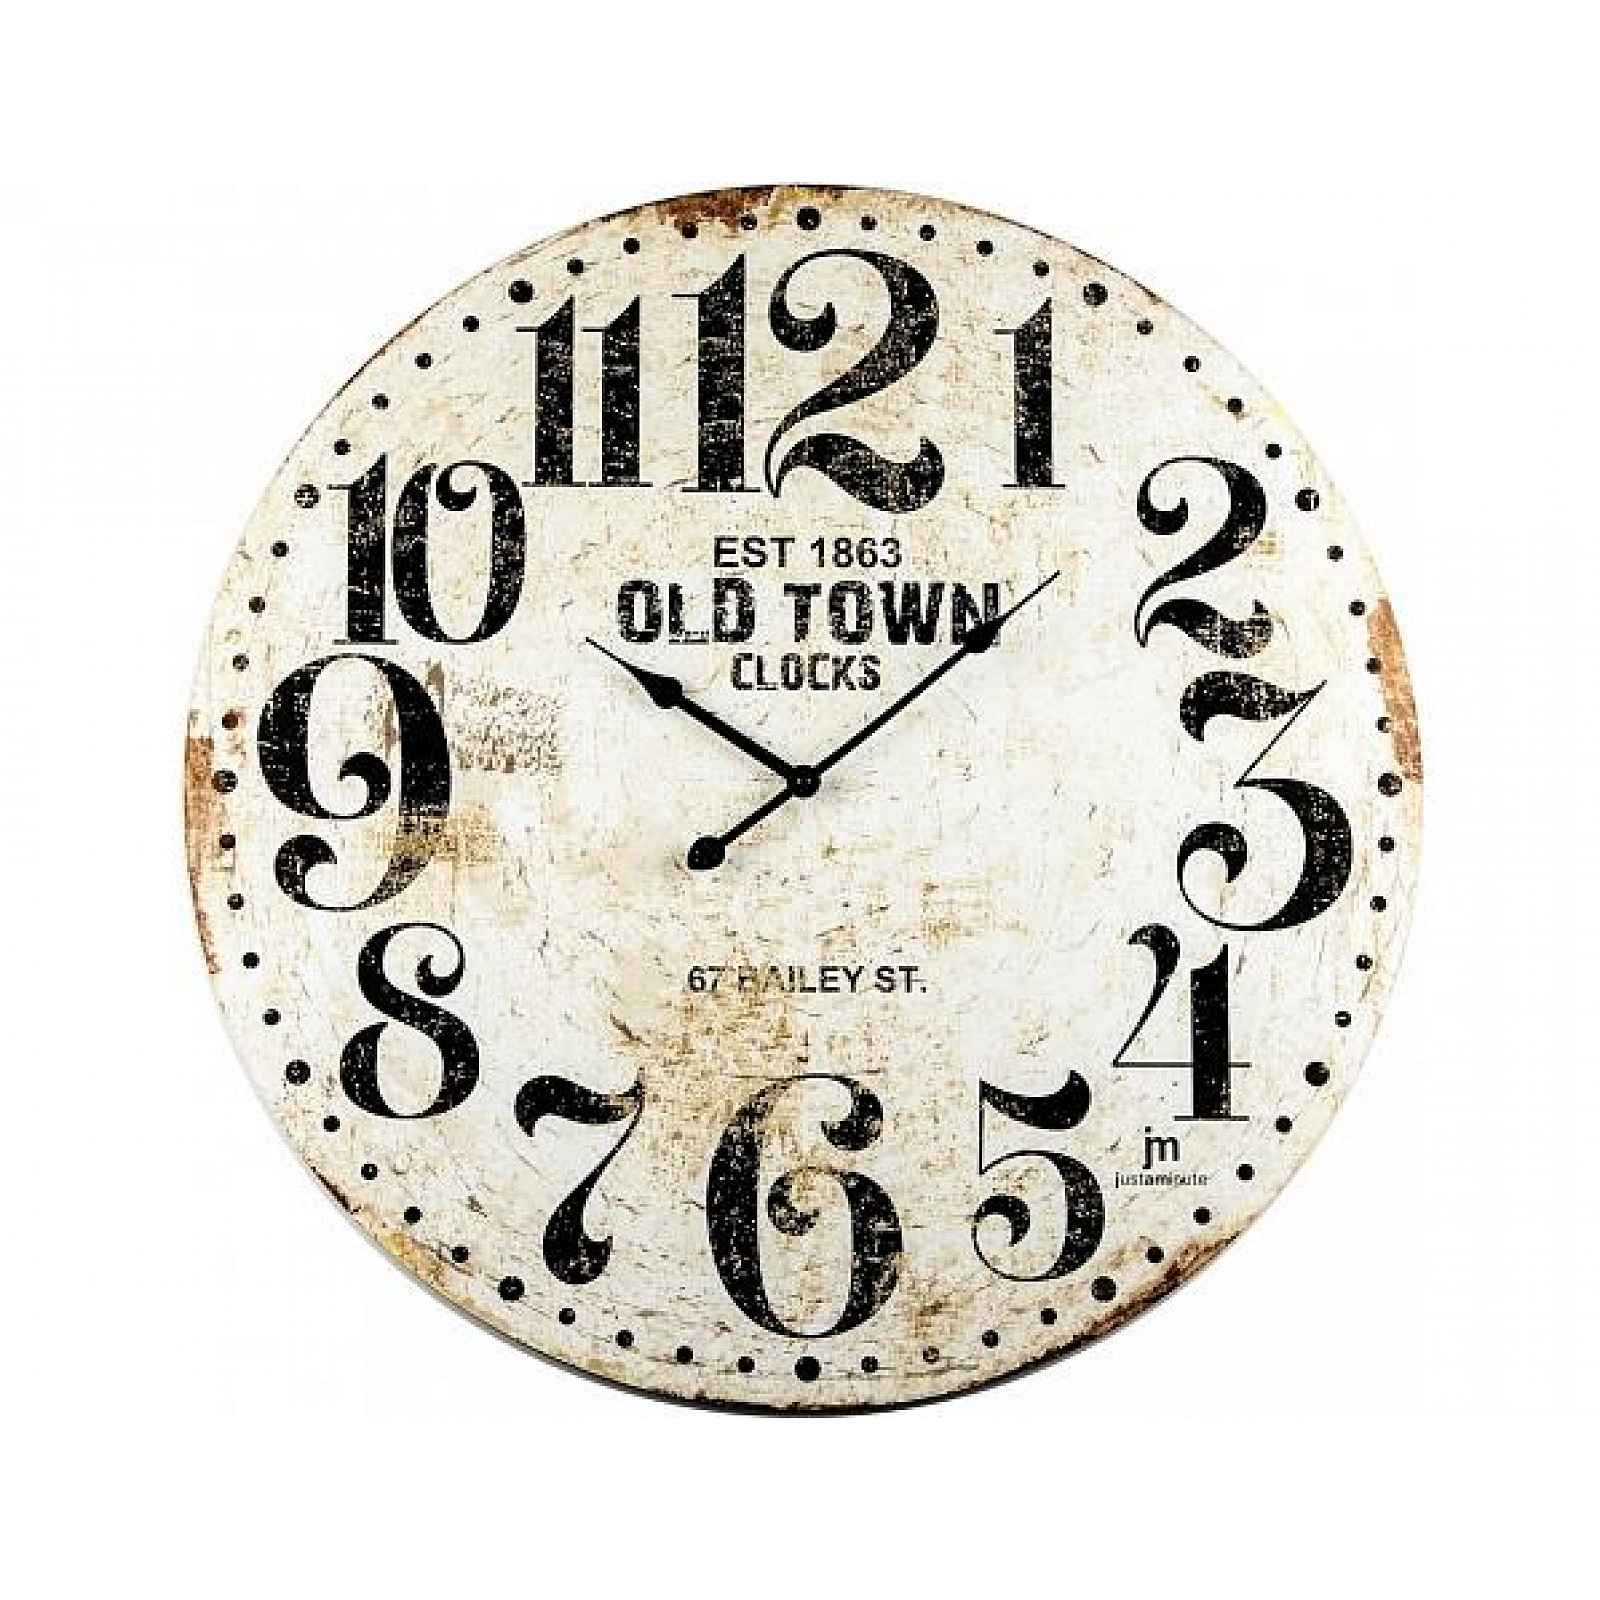 Designové nástěnné hodiny 21486 Lowell 60cm